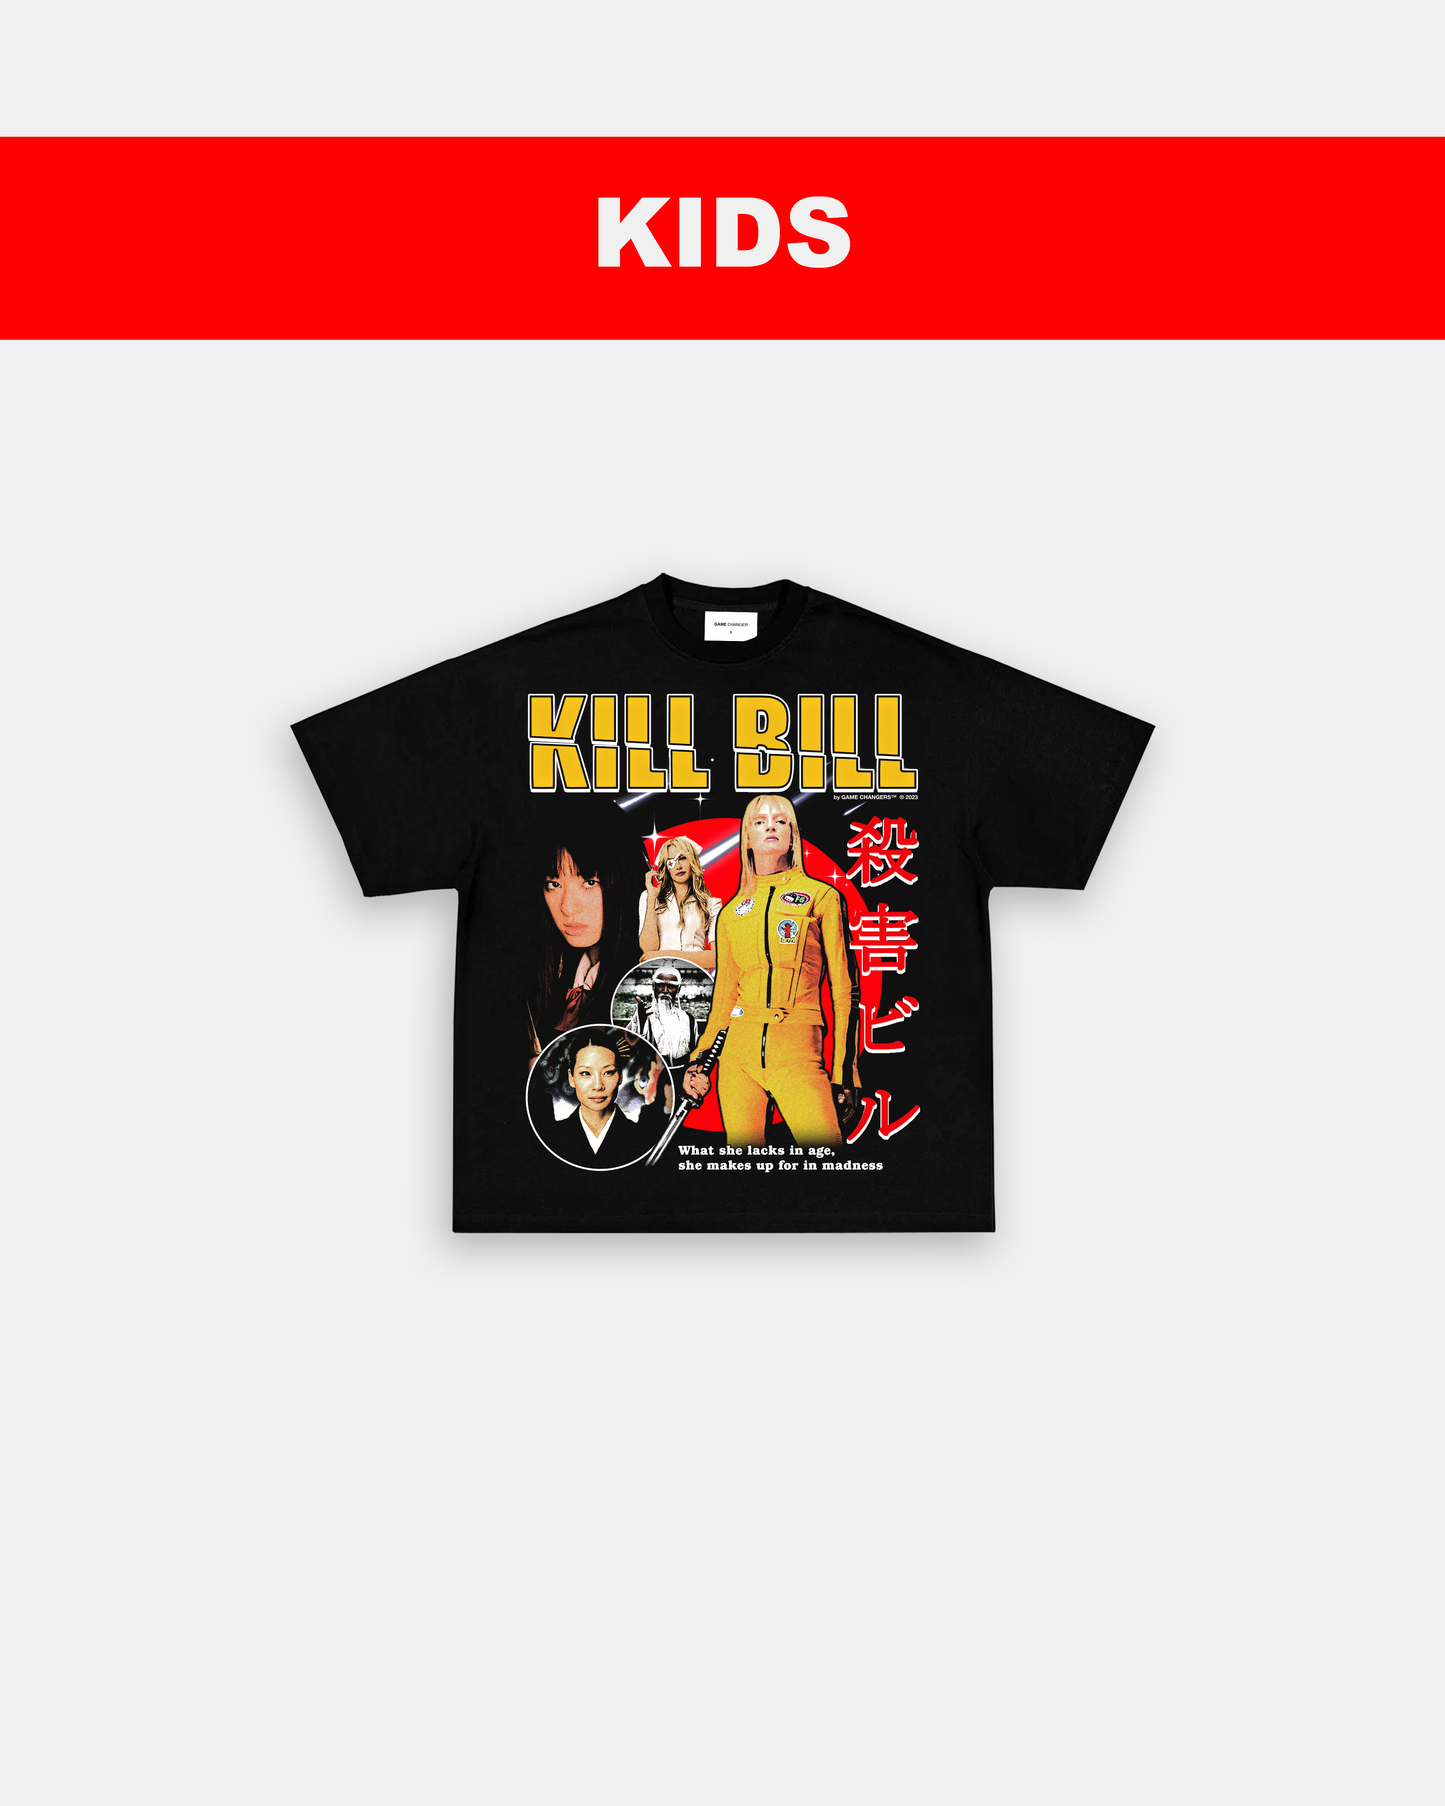 KILL BILL - KIDS TEE